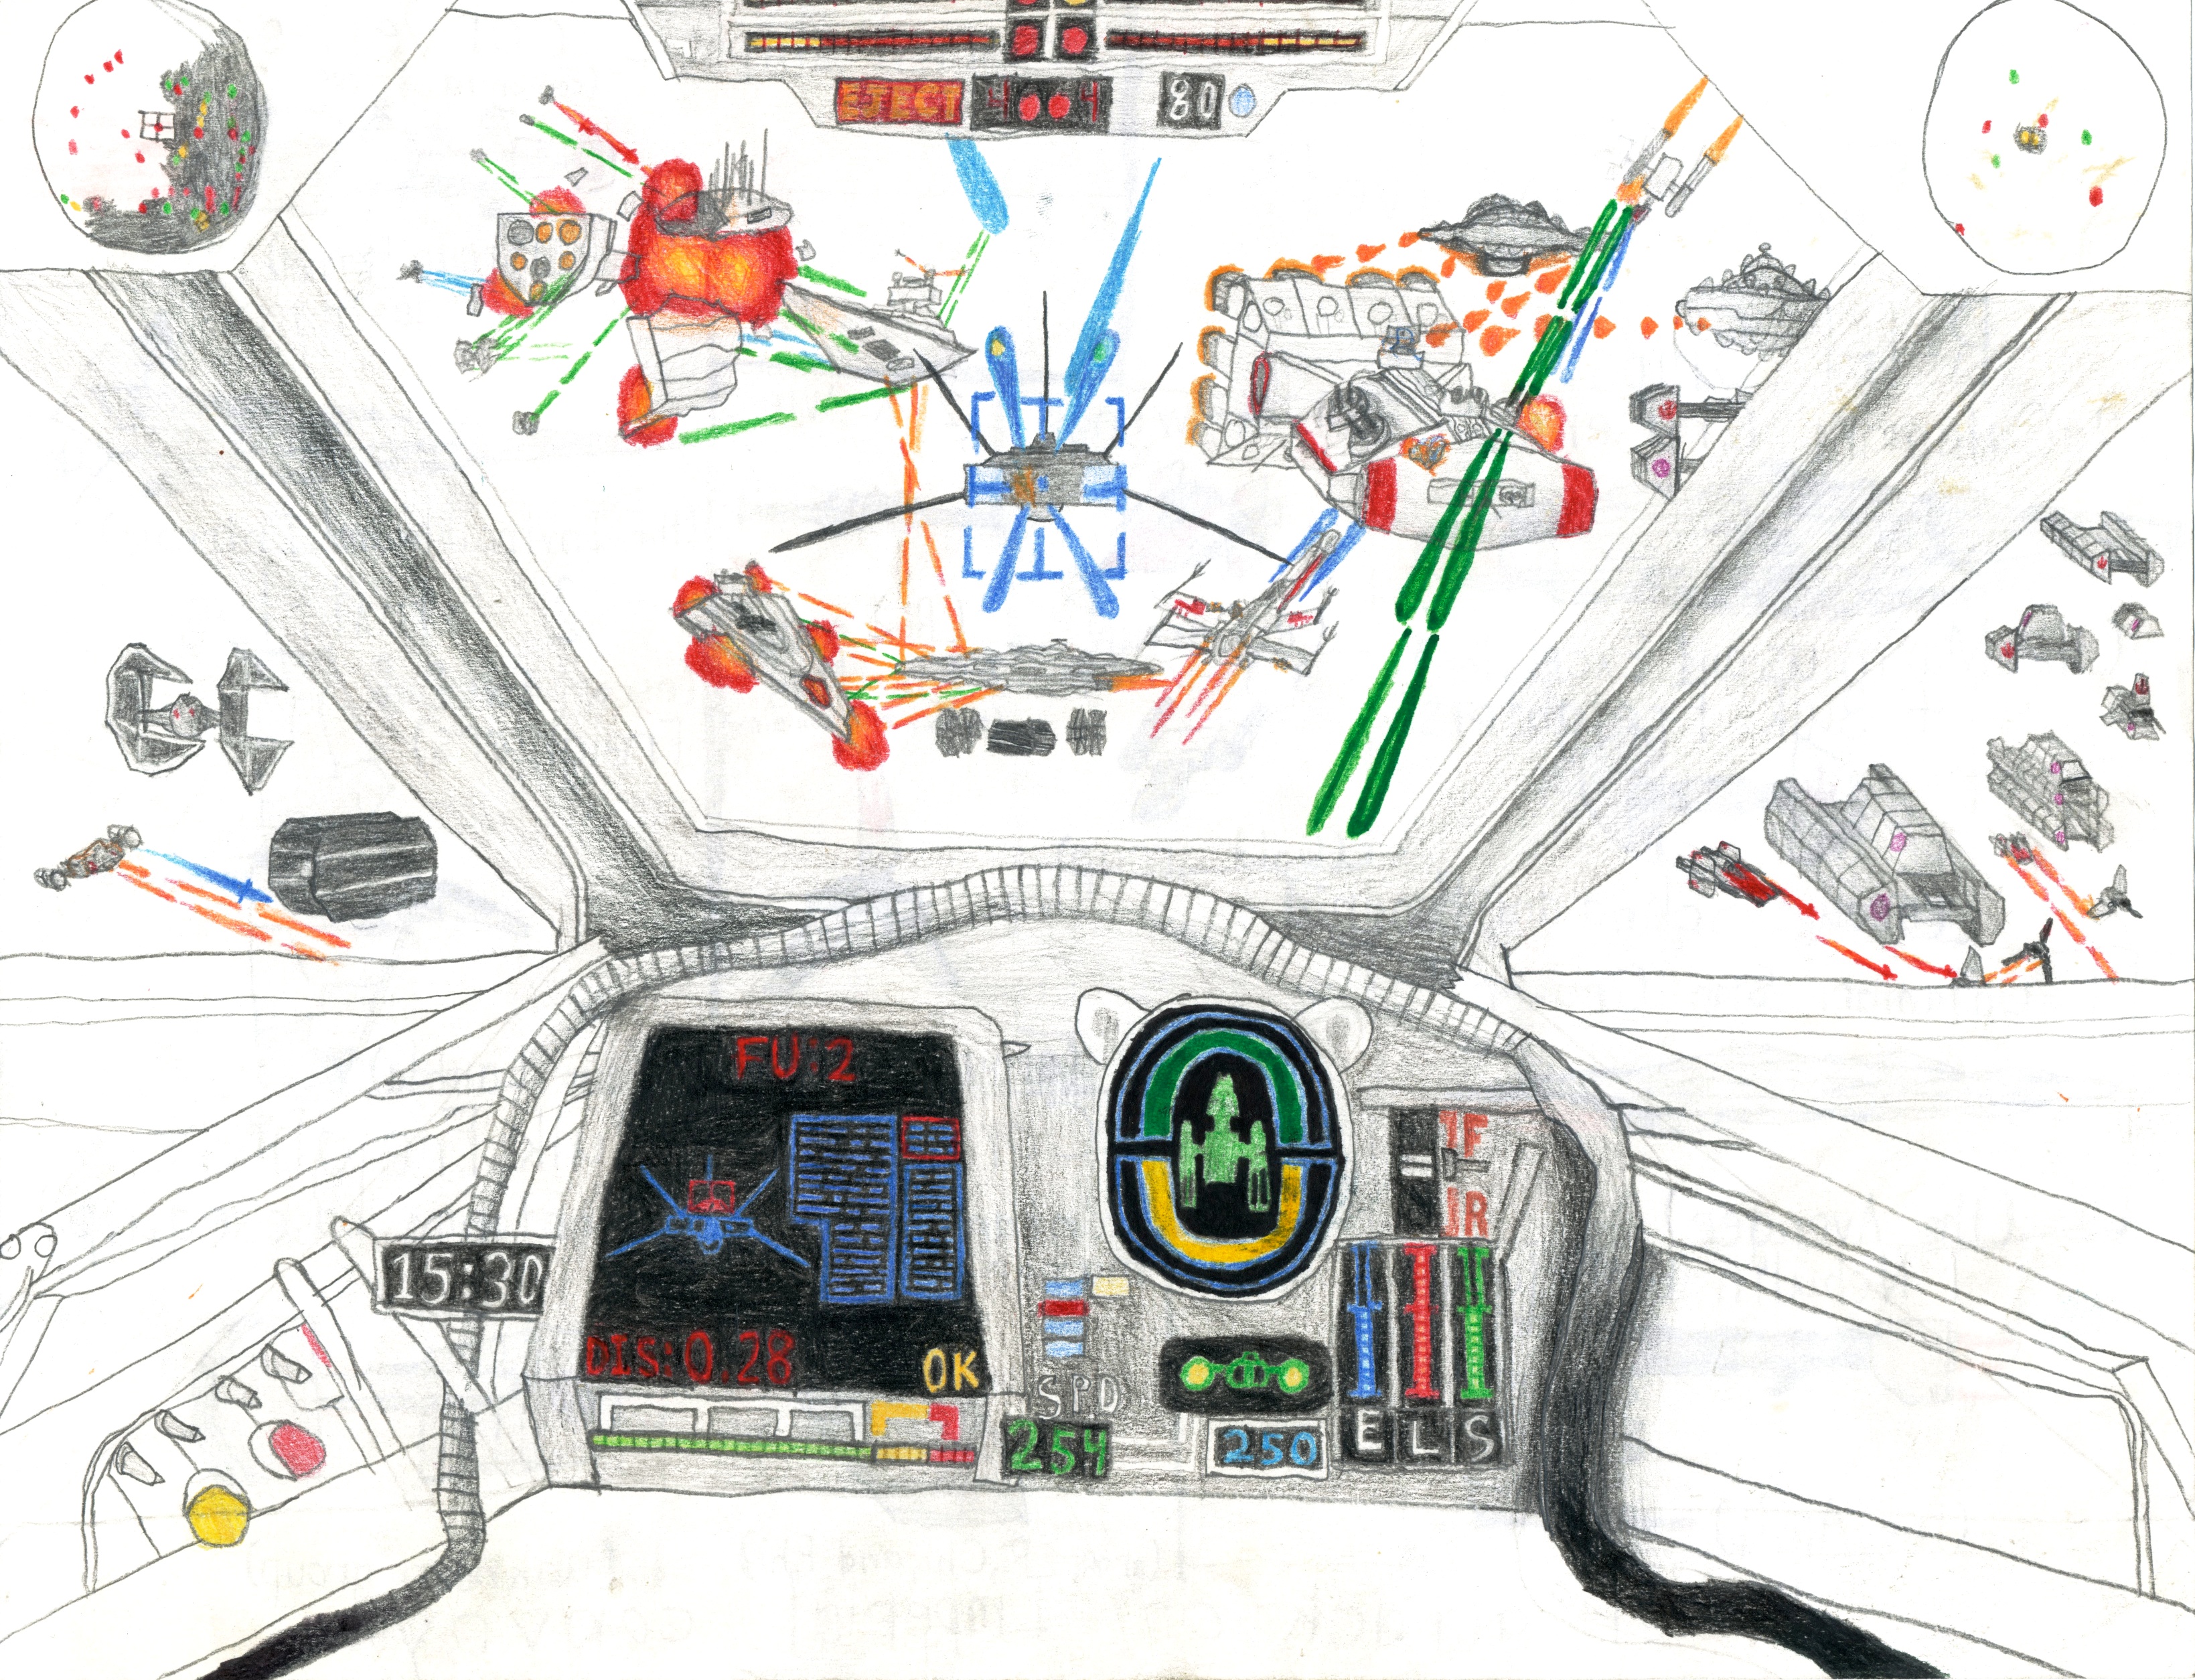 Star Wars Epic Scene - Full Cockpit